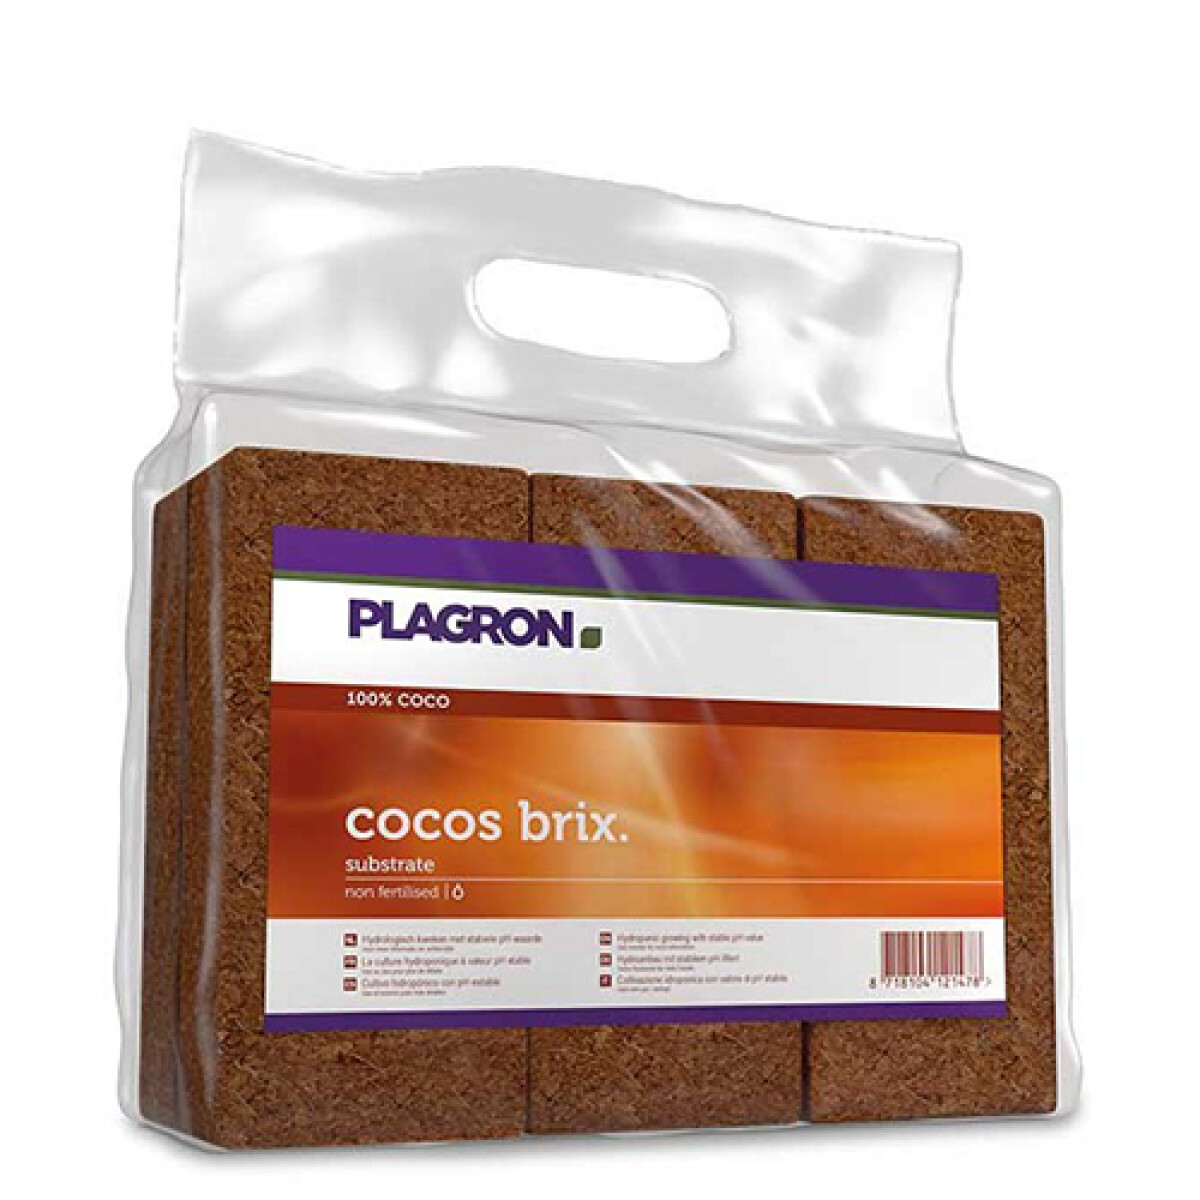 COCOS BRIX 7L PLAGRON - X6 UNIDADES 